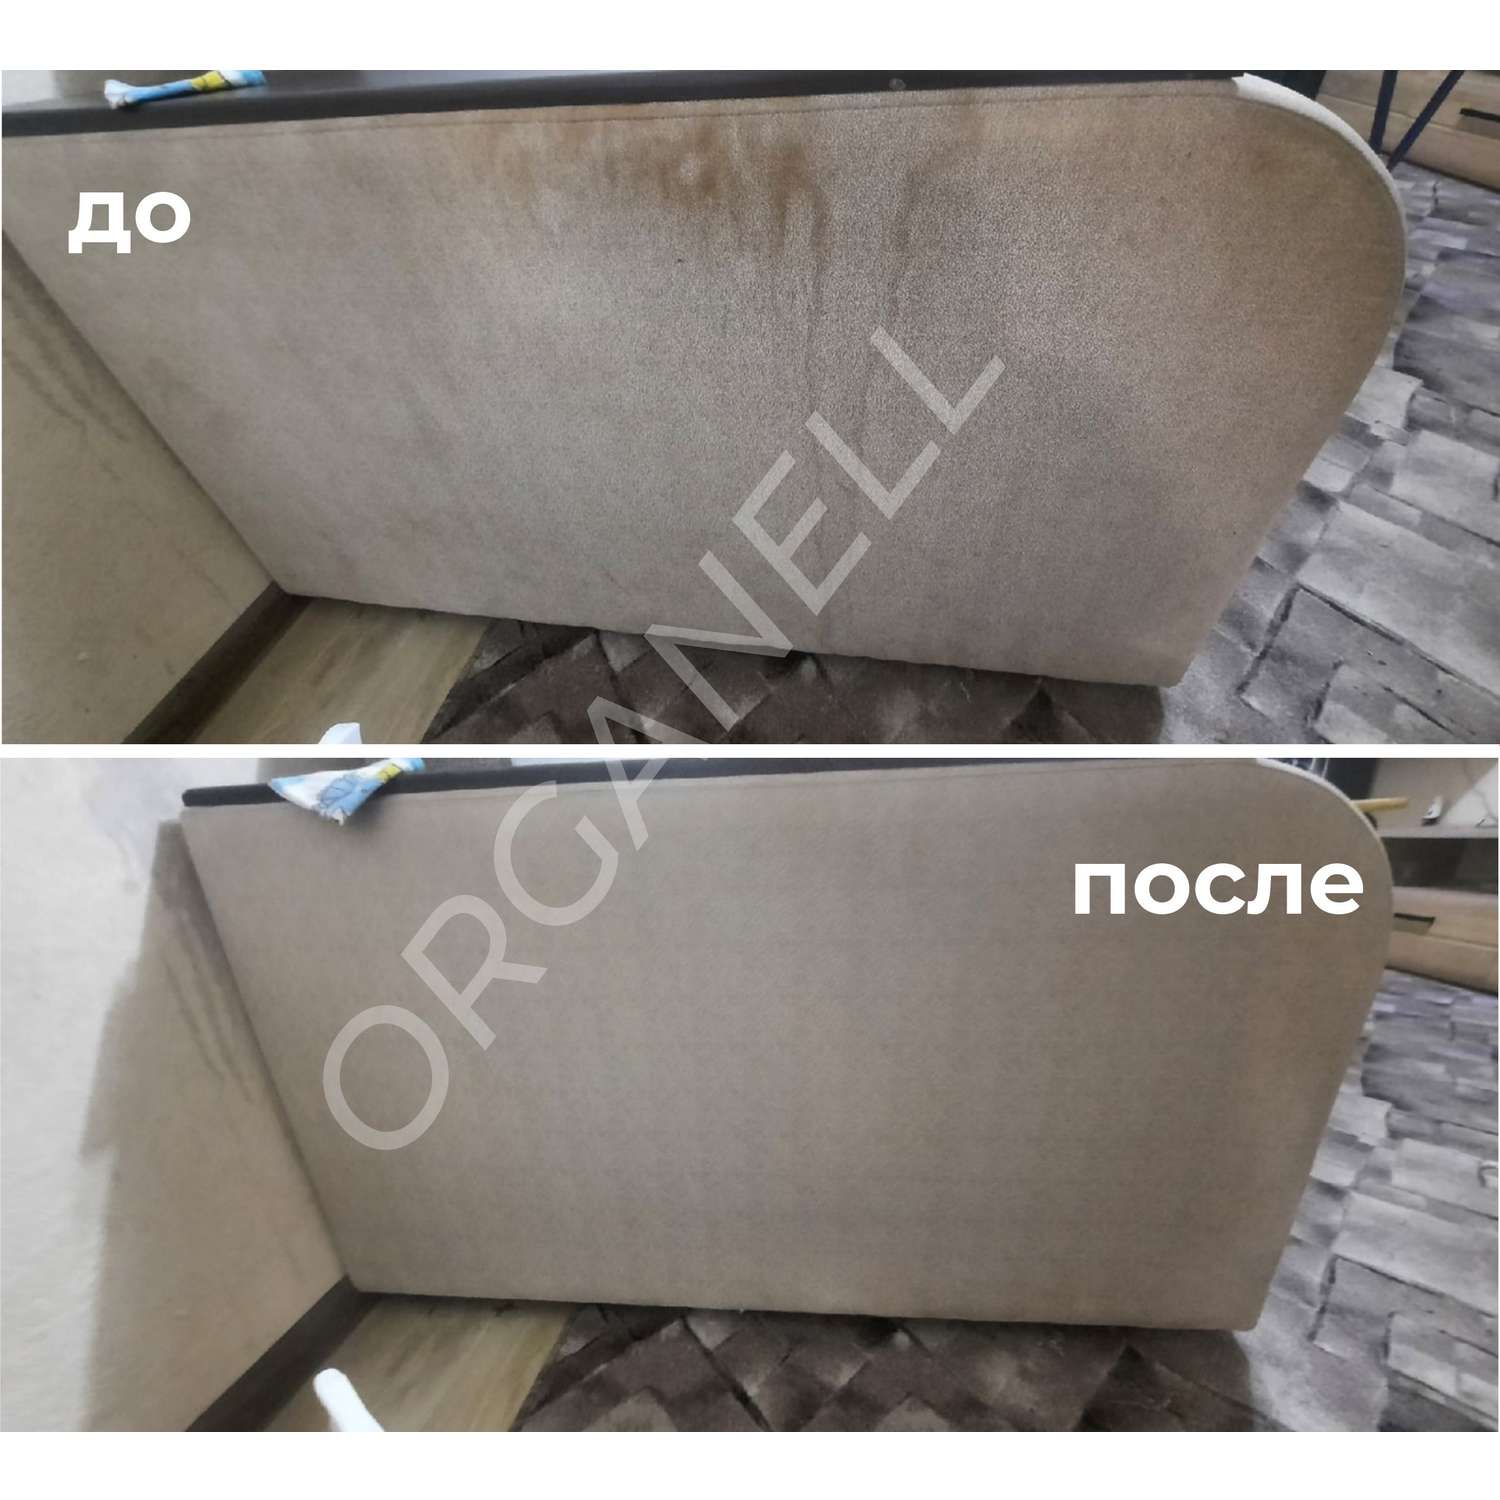 Спрей для чистки ковров Organell спрей - фото 4